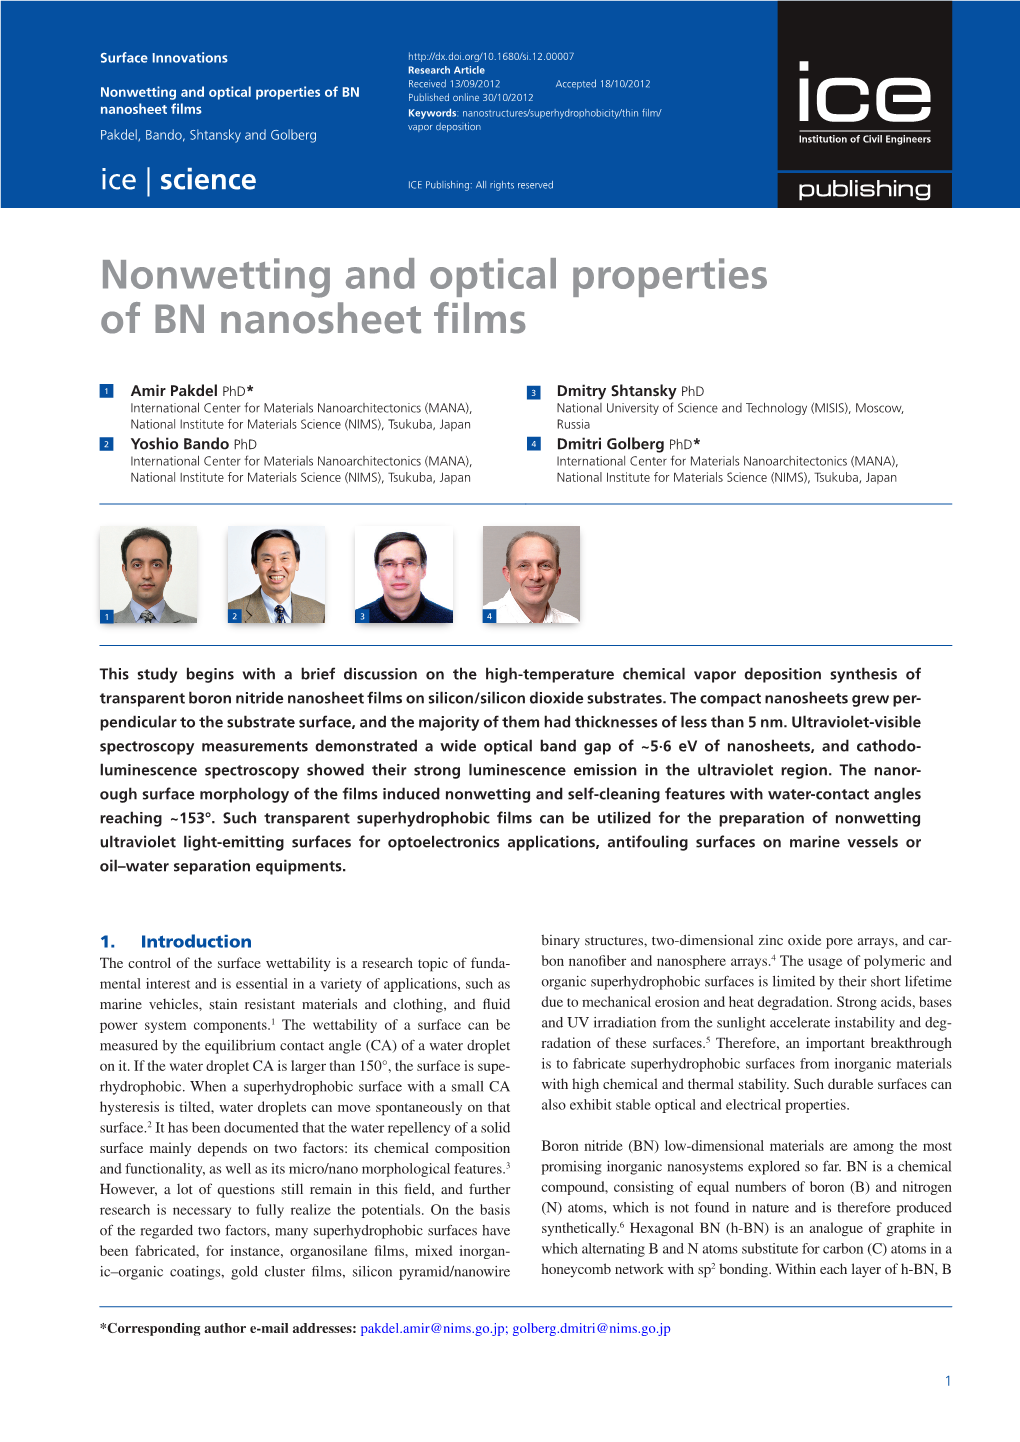 Nonwetting and Optical Properties of BN Nanosheet Films